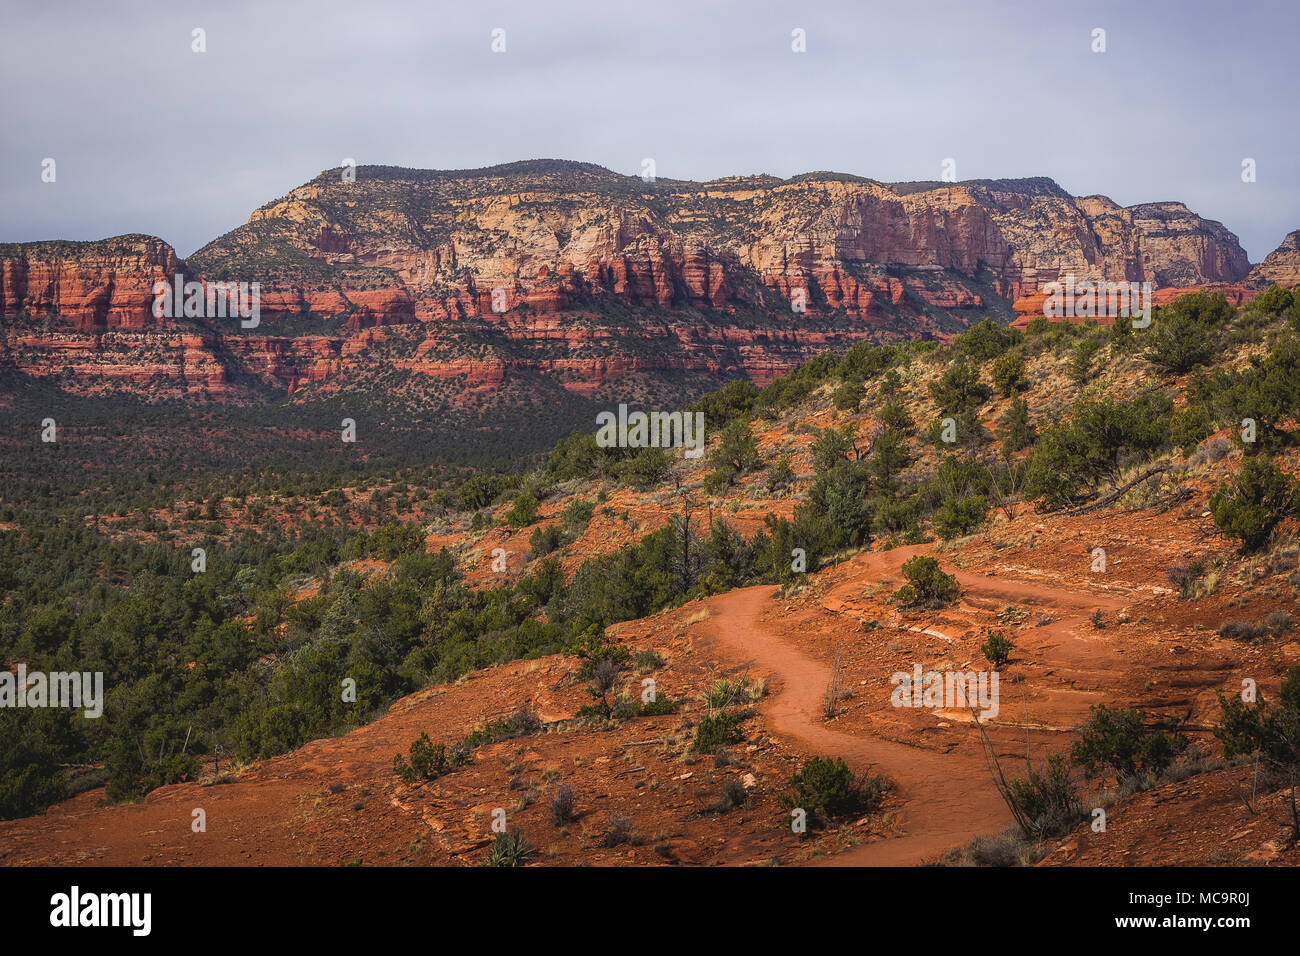 Vue panoramique sur Chuck Wagon Trail avec La Montagne Secrète et diverses formations de roche rouge dans la distance, Sedona, Arizona Banque D'Images